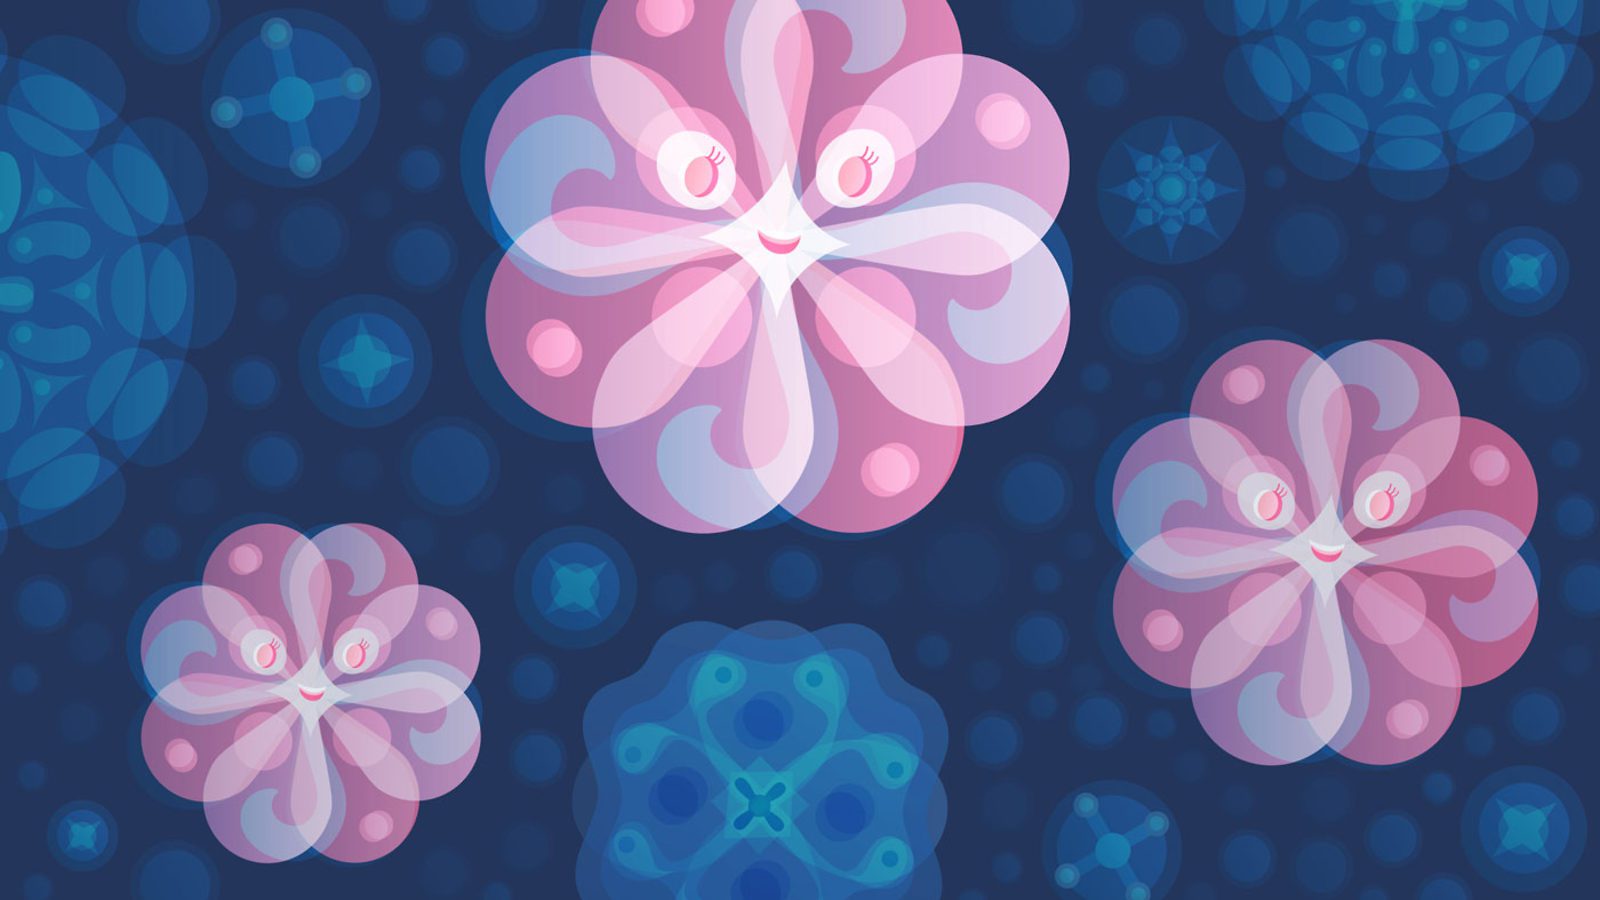 رسم تخيلي للجزيئات الضخمة ذات التفاعل الضعيف (wimp) [المصدر:symmetrymagazine.org]